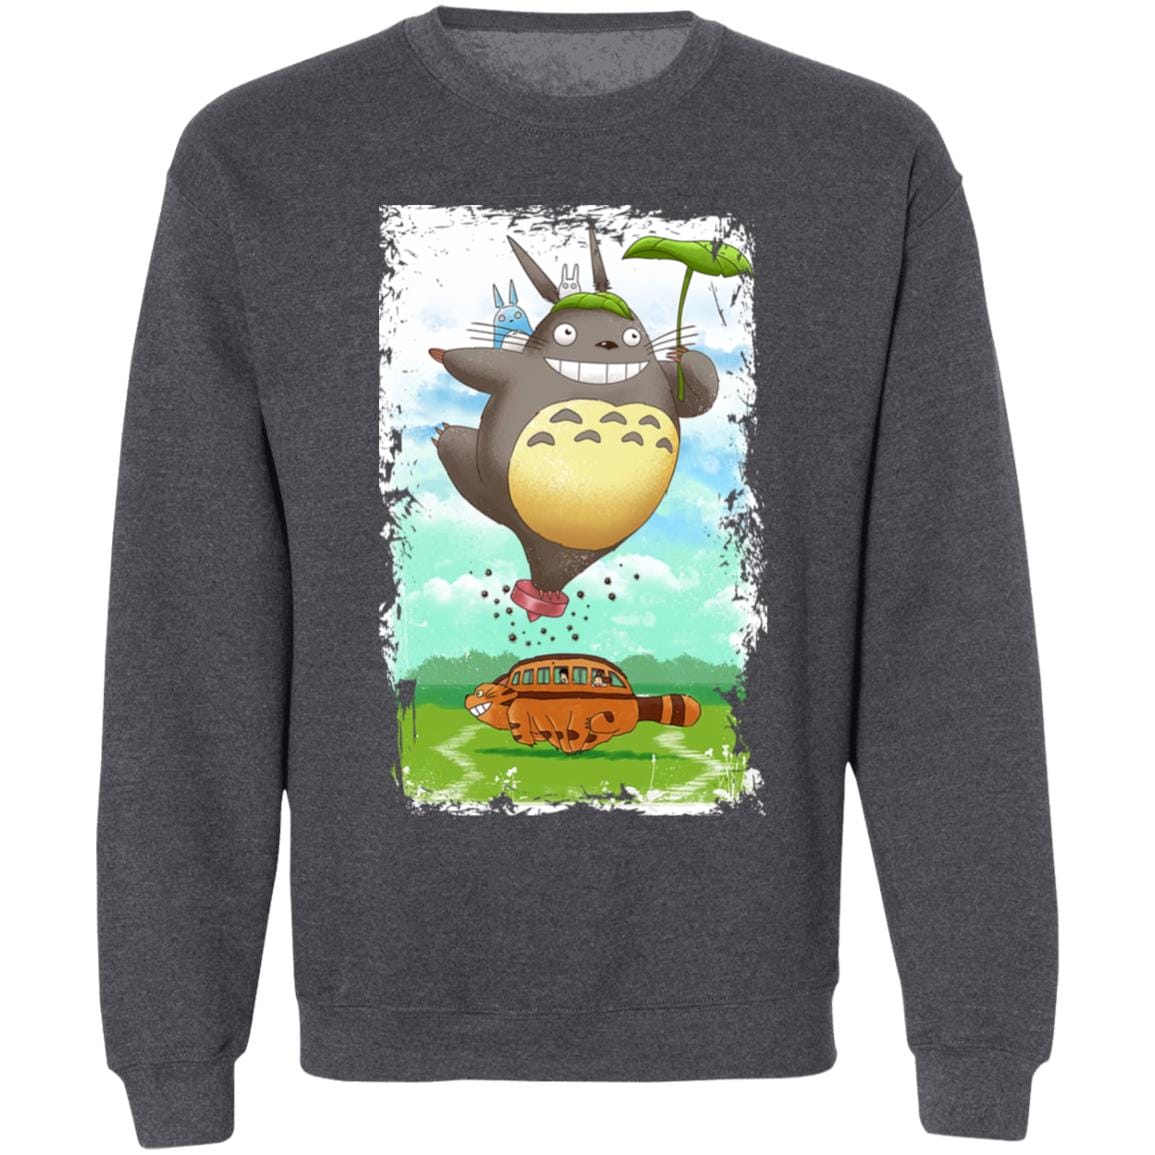 Totoro the Funny Neighbor Sweatshirt